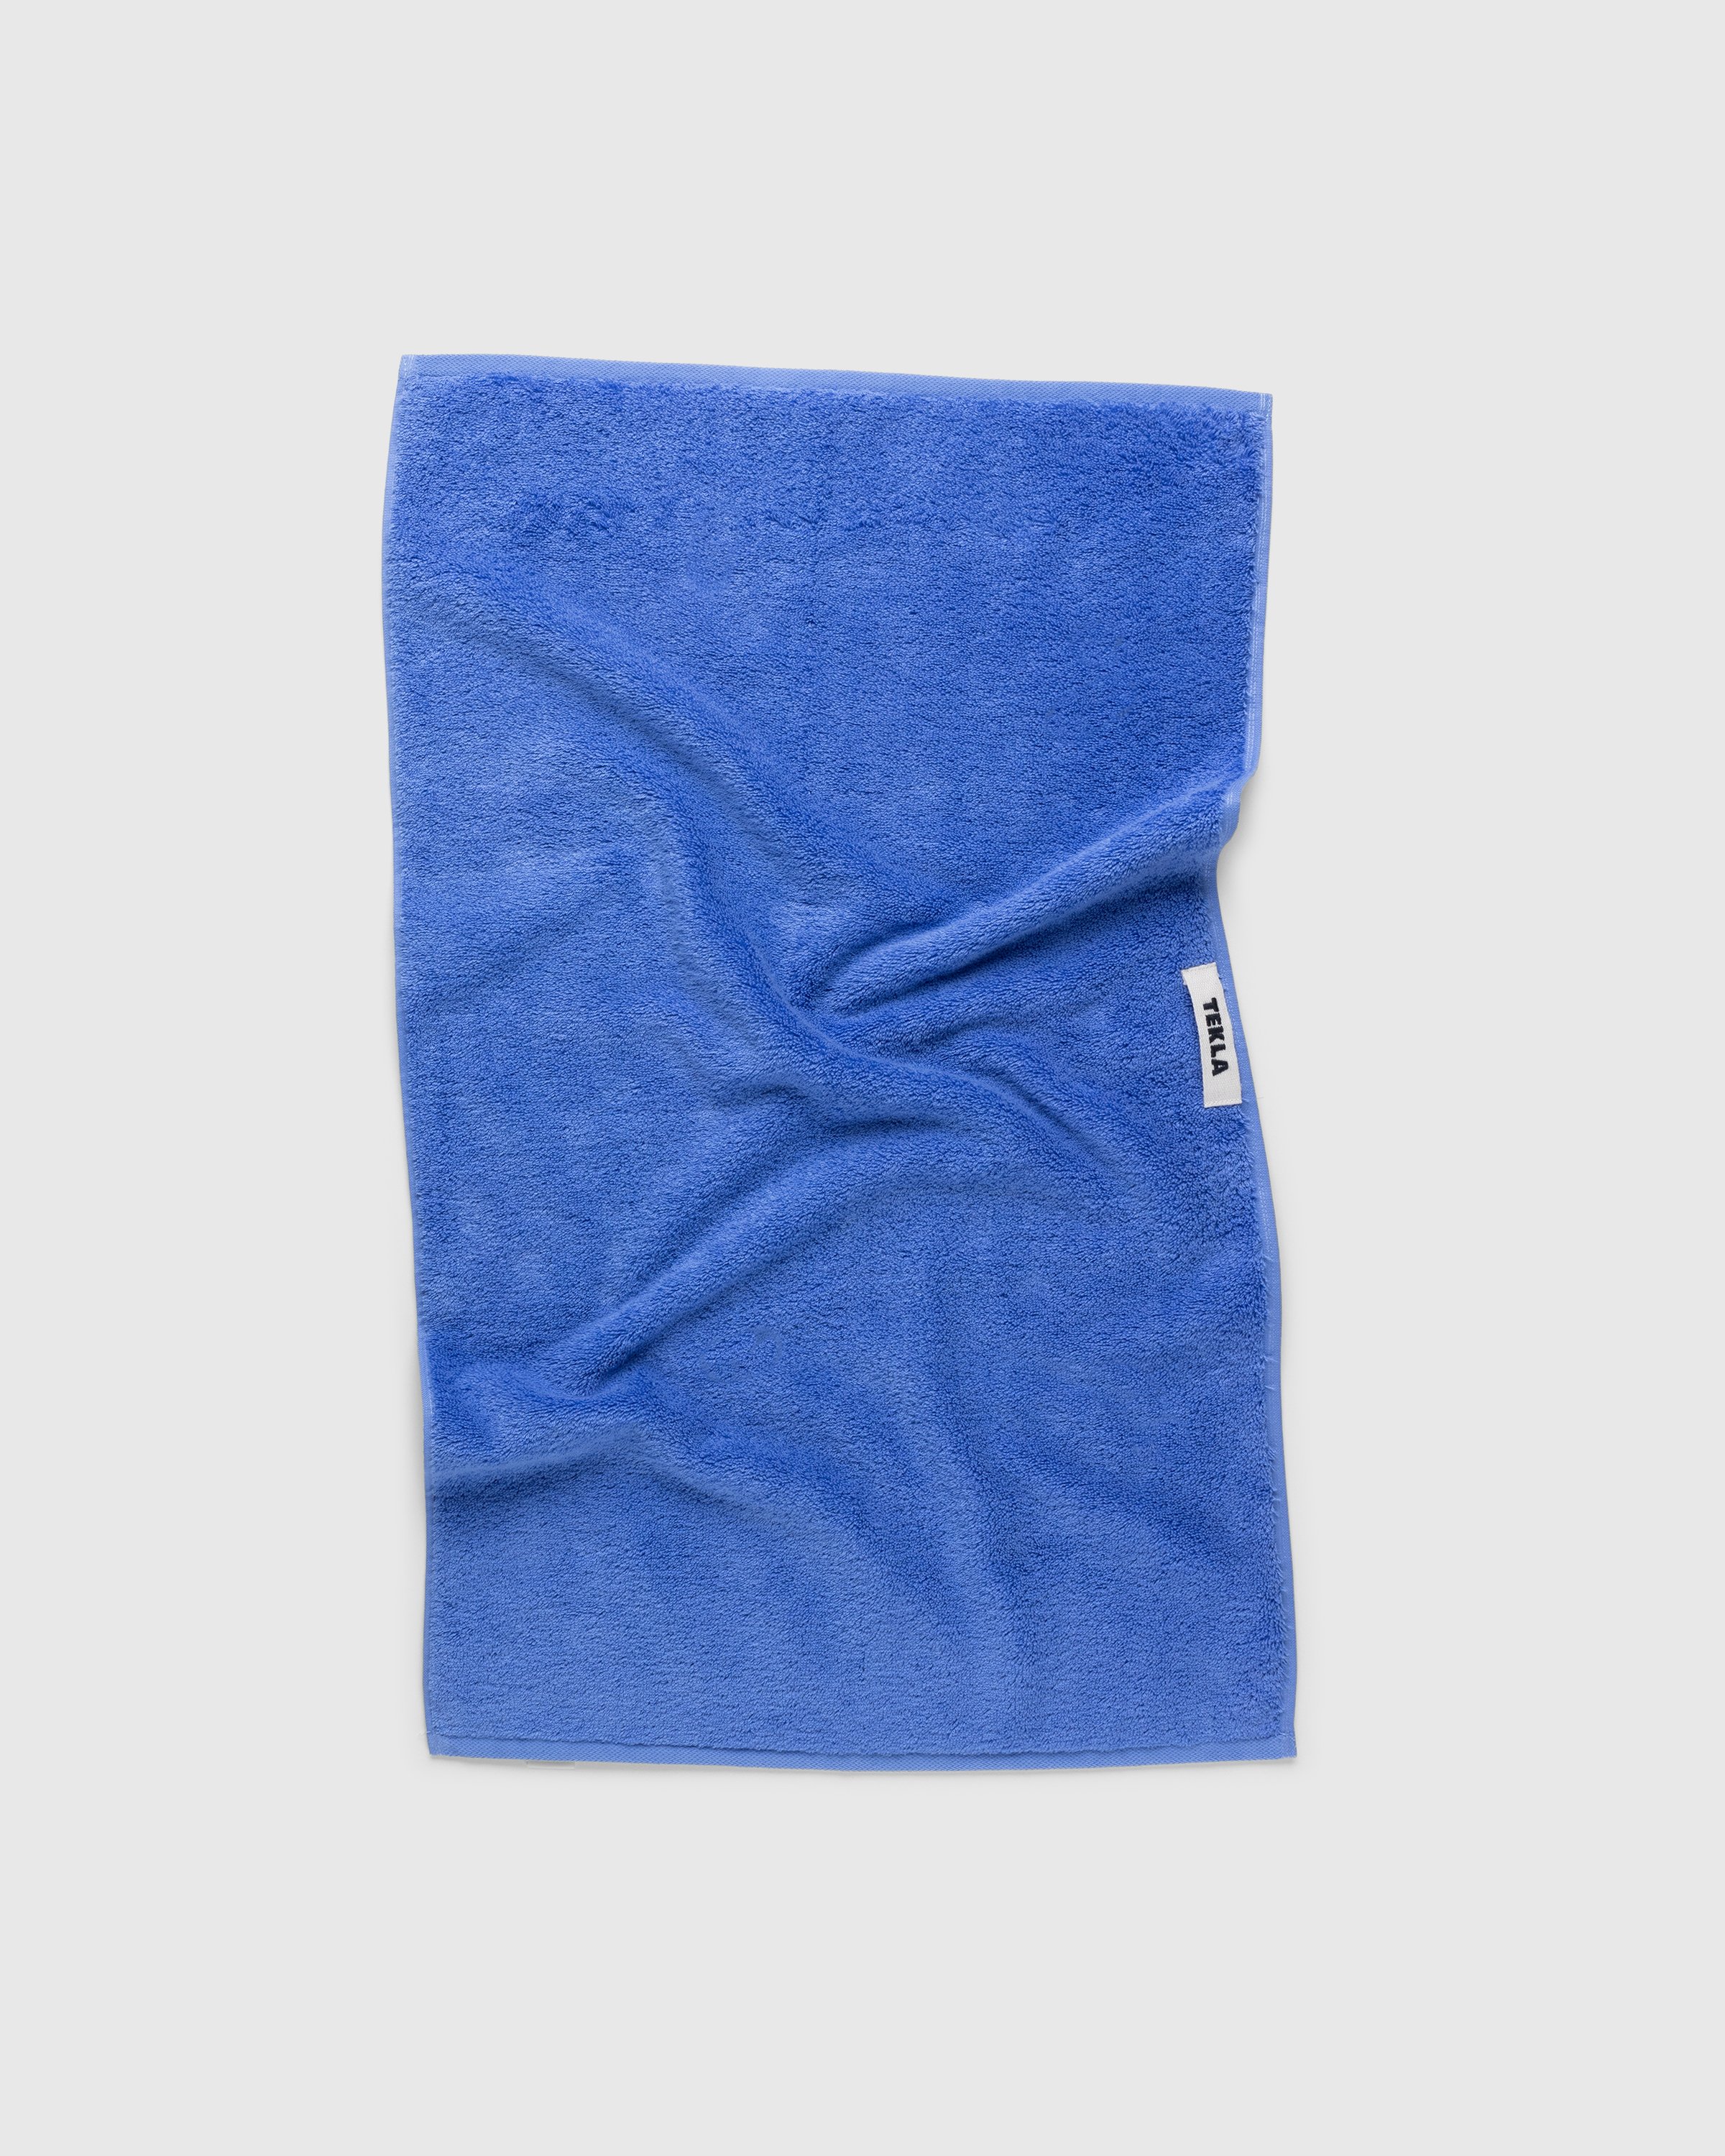 Tekla - Guest Towel Clear Blue - Lifestyle - Blue - Image 1